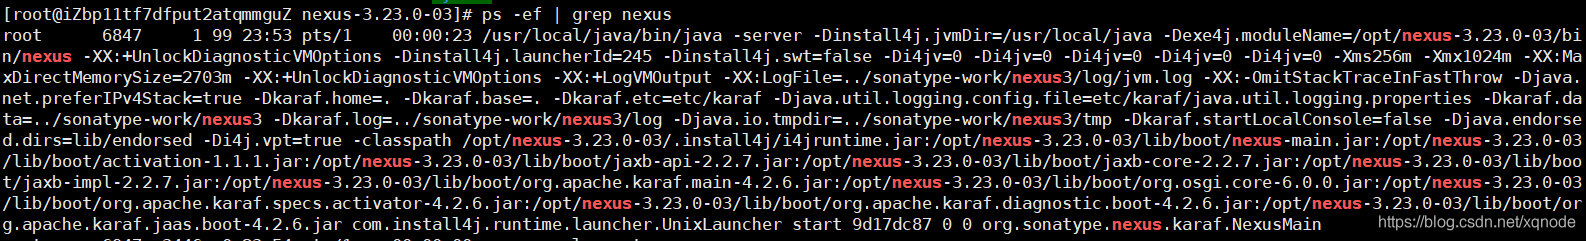 CentOS7安装maven私服仓库nexus3教程_linux_04